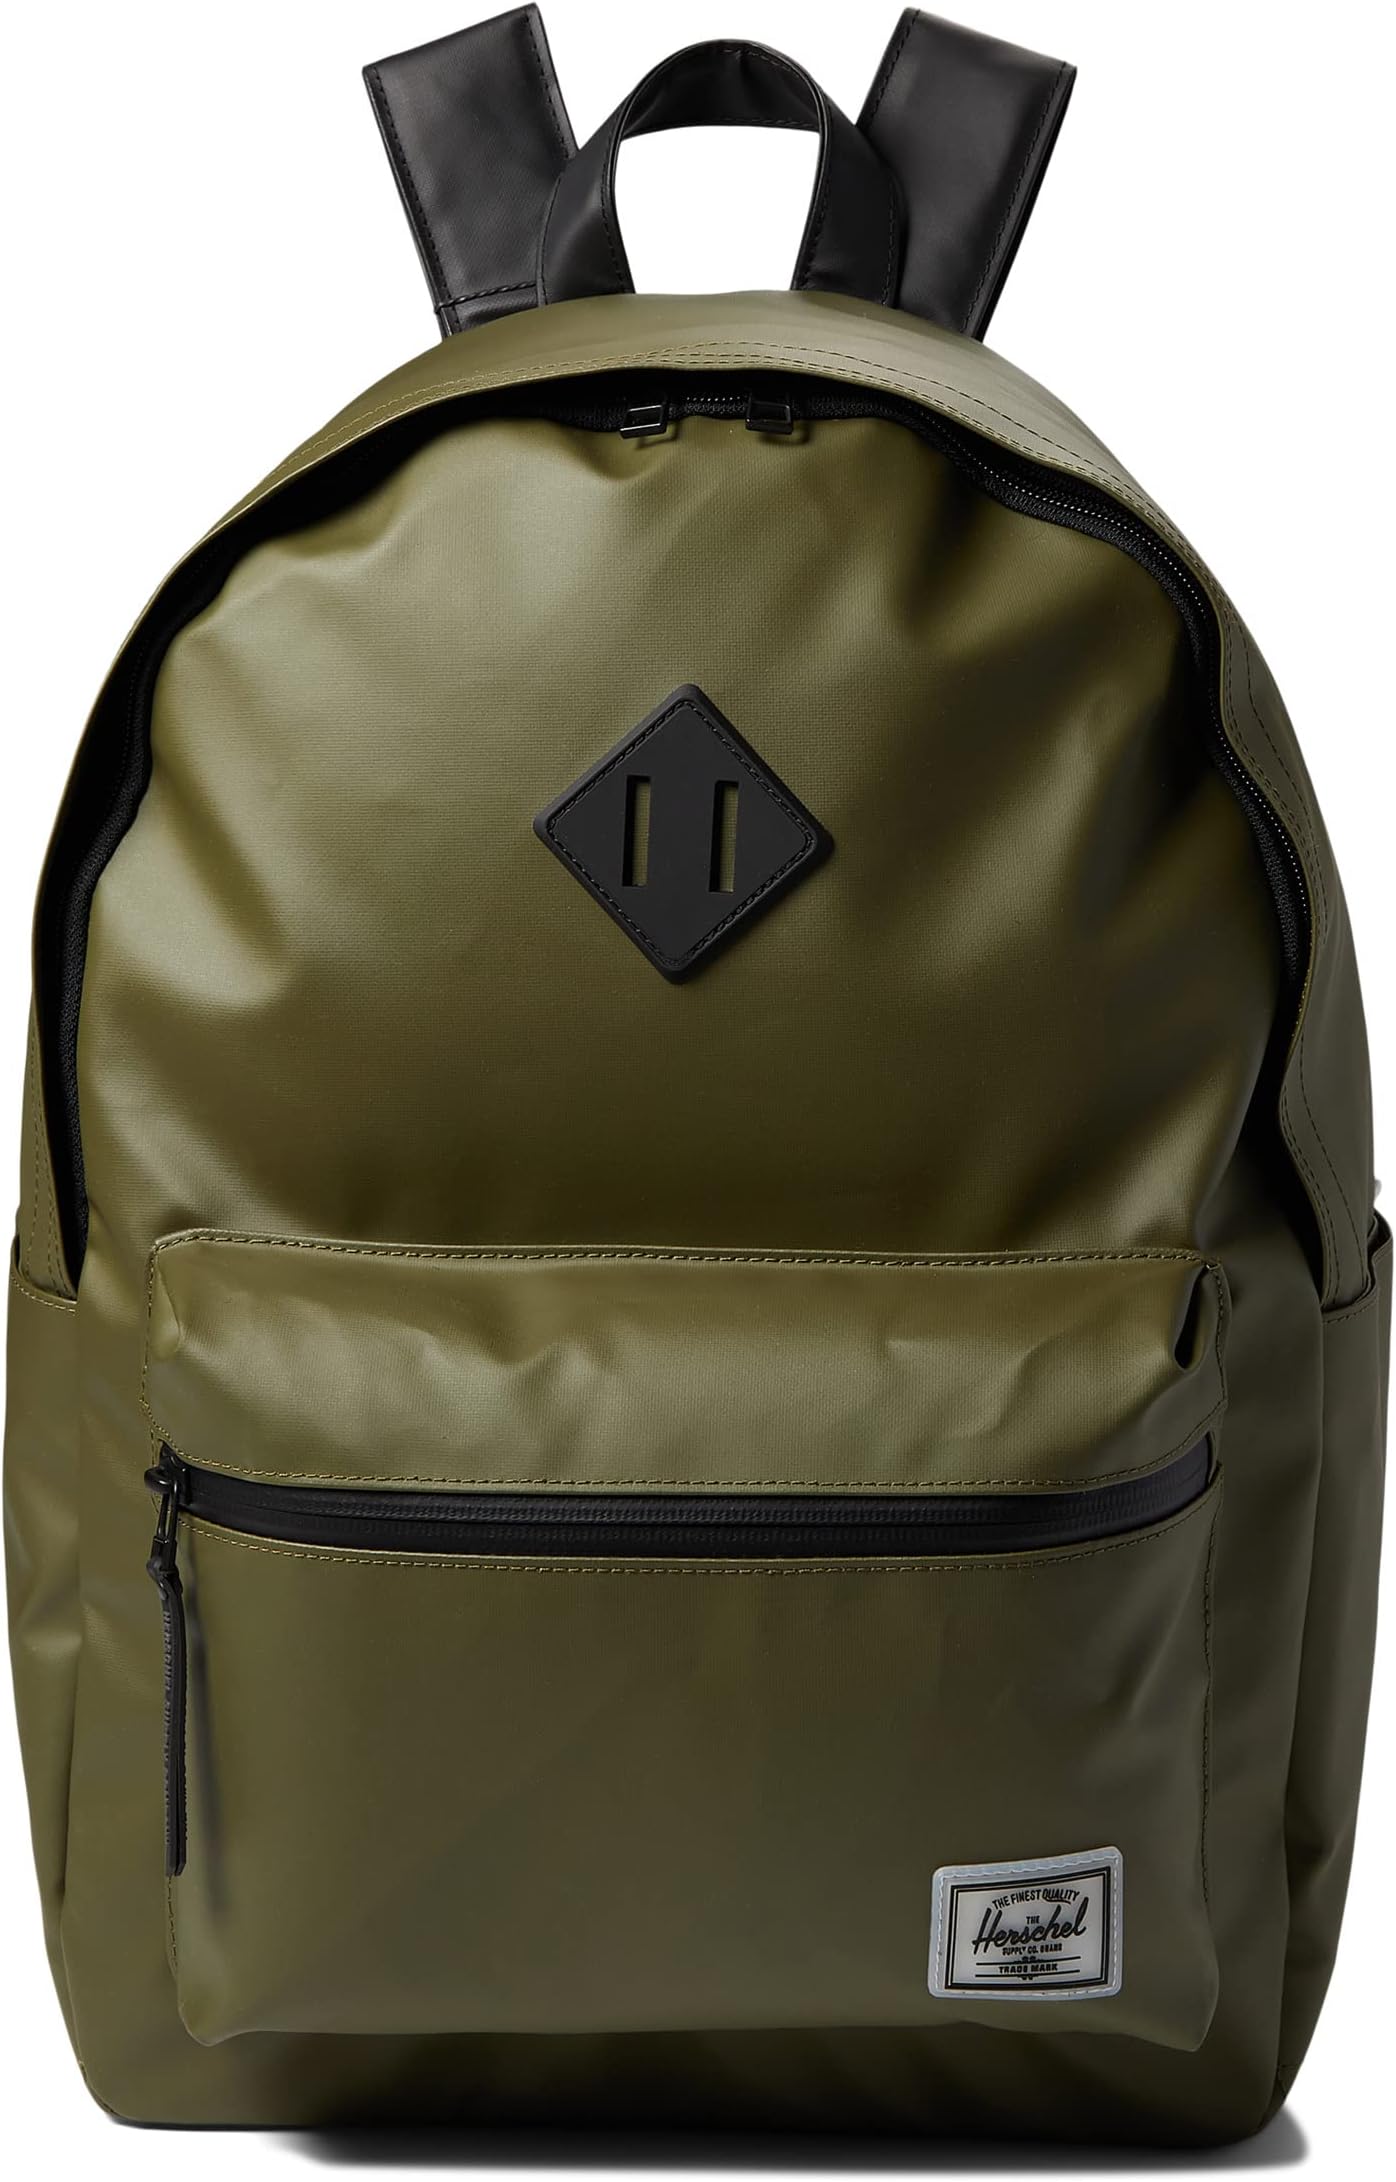 рюкзак retreat backpack herschel supply co цвет ivy green Рюкзак Classic X-Large Herschel Supply Co., цвет Ivy Green